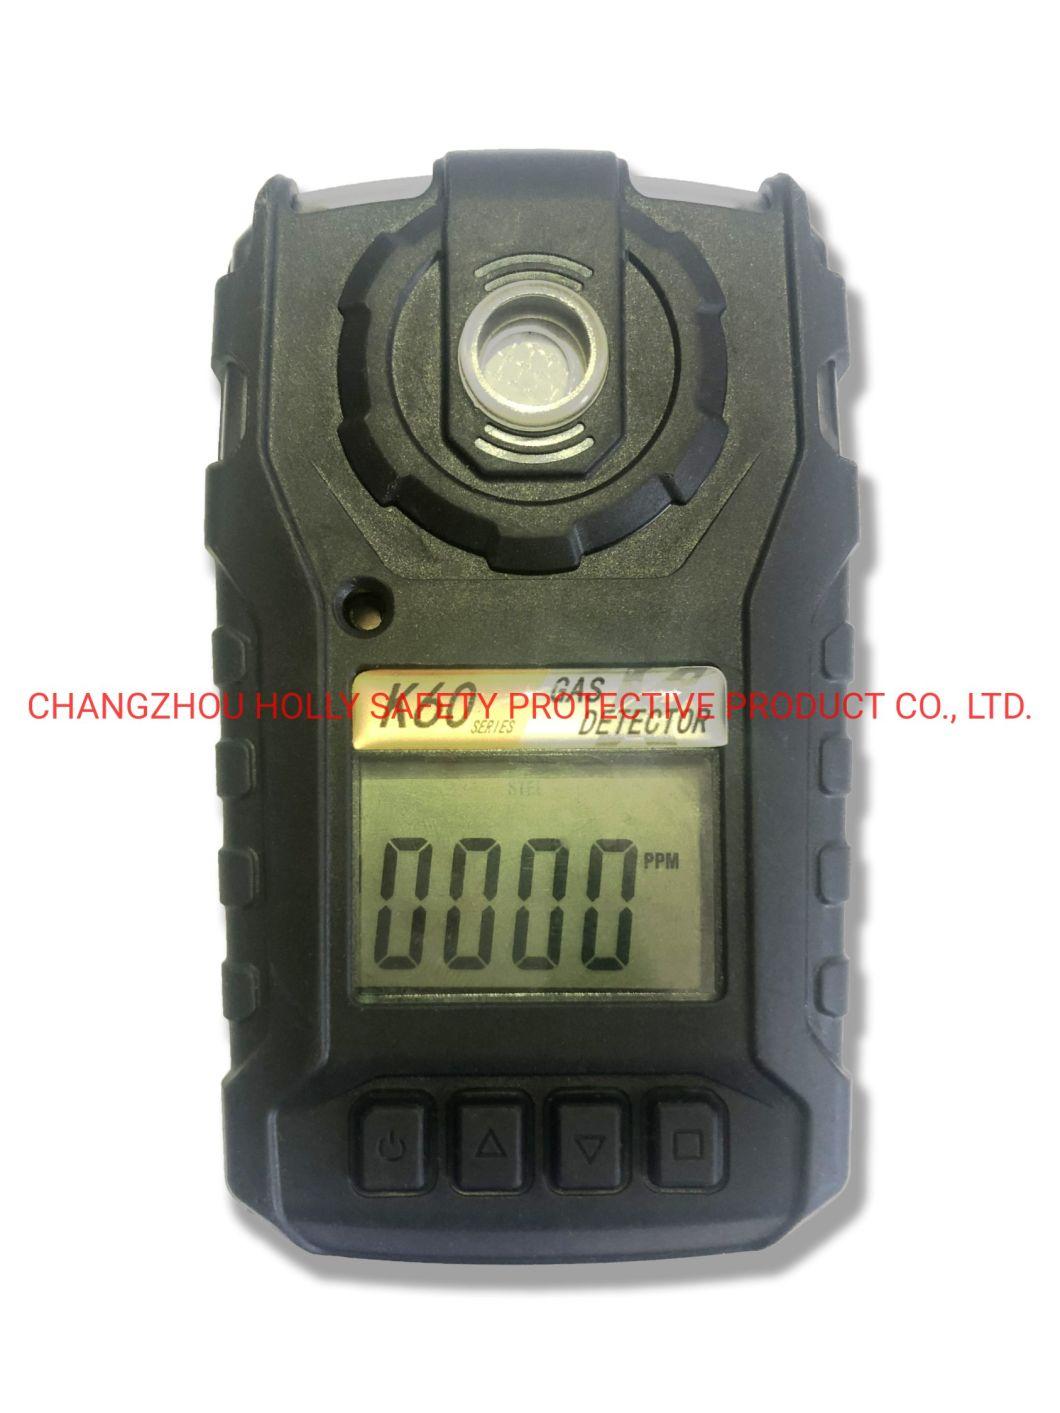 Portable Single Gas C3h8 (IR) Detector/Analyzer